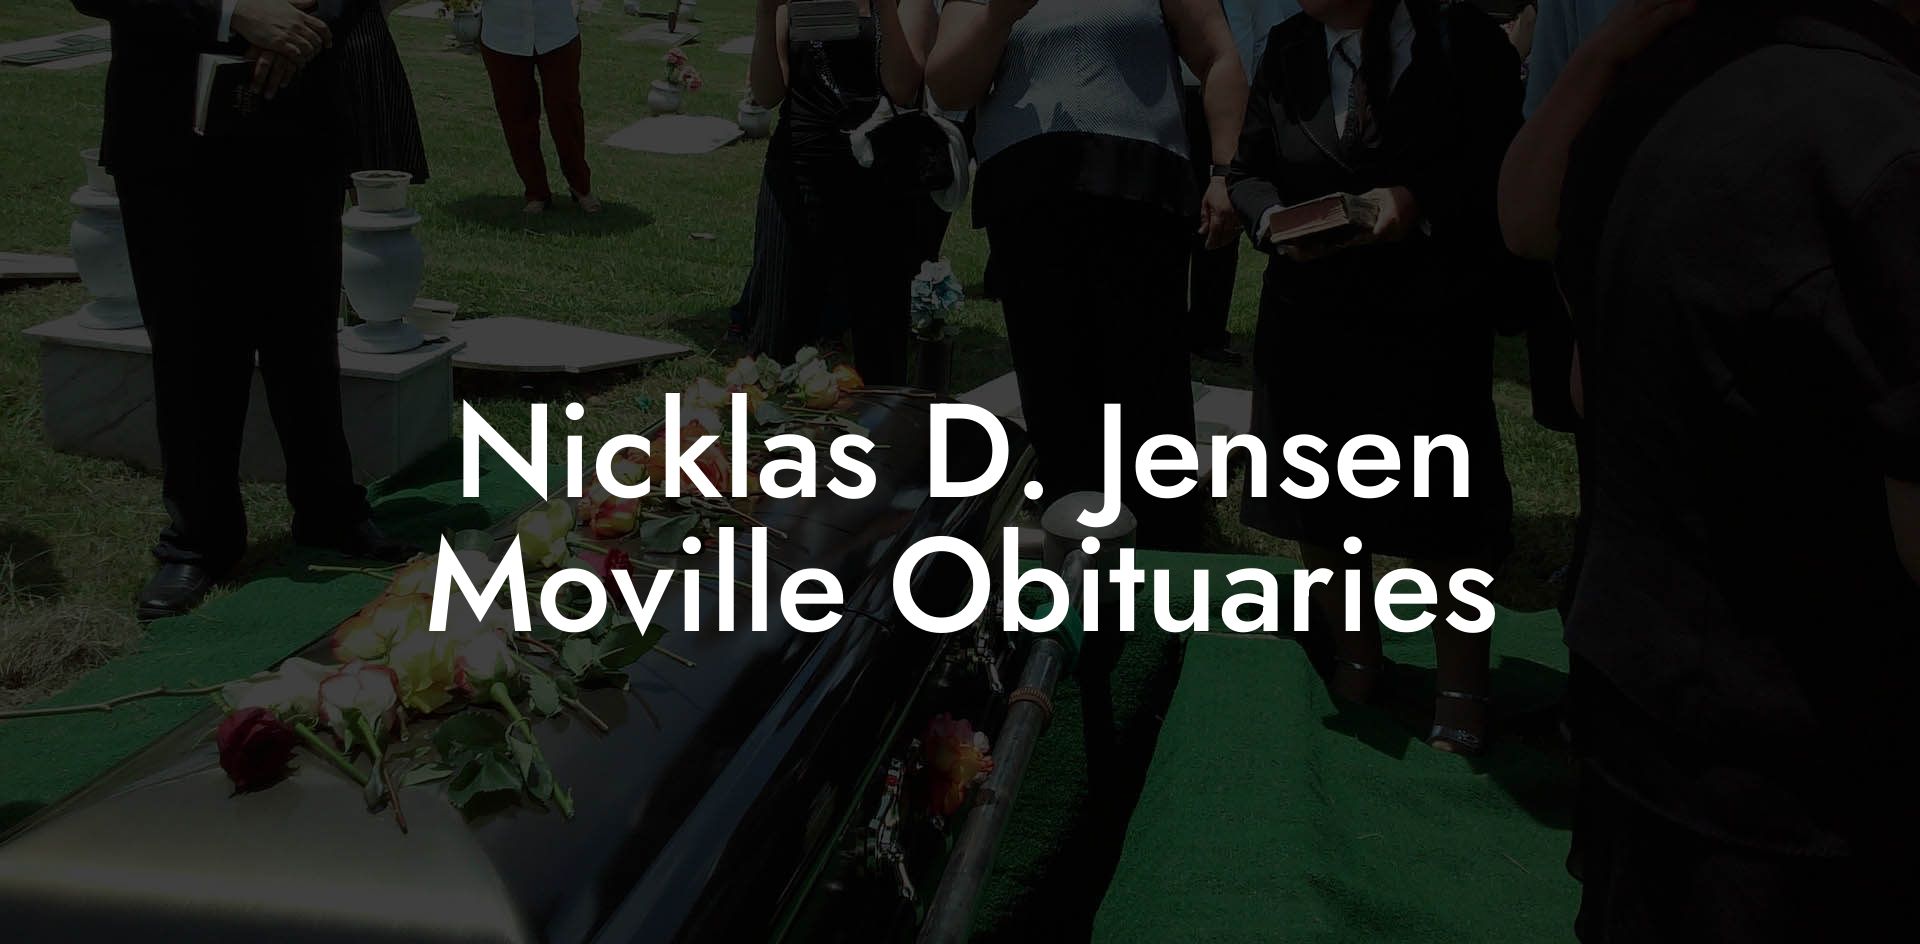 Nicklas D. Jensen Moville Obituaries